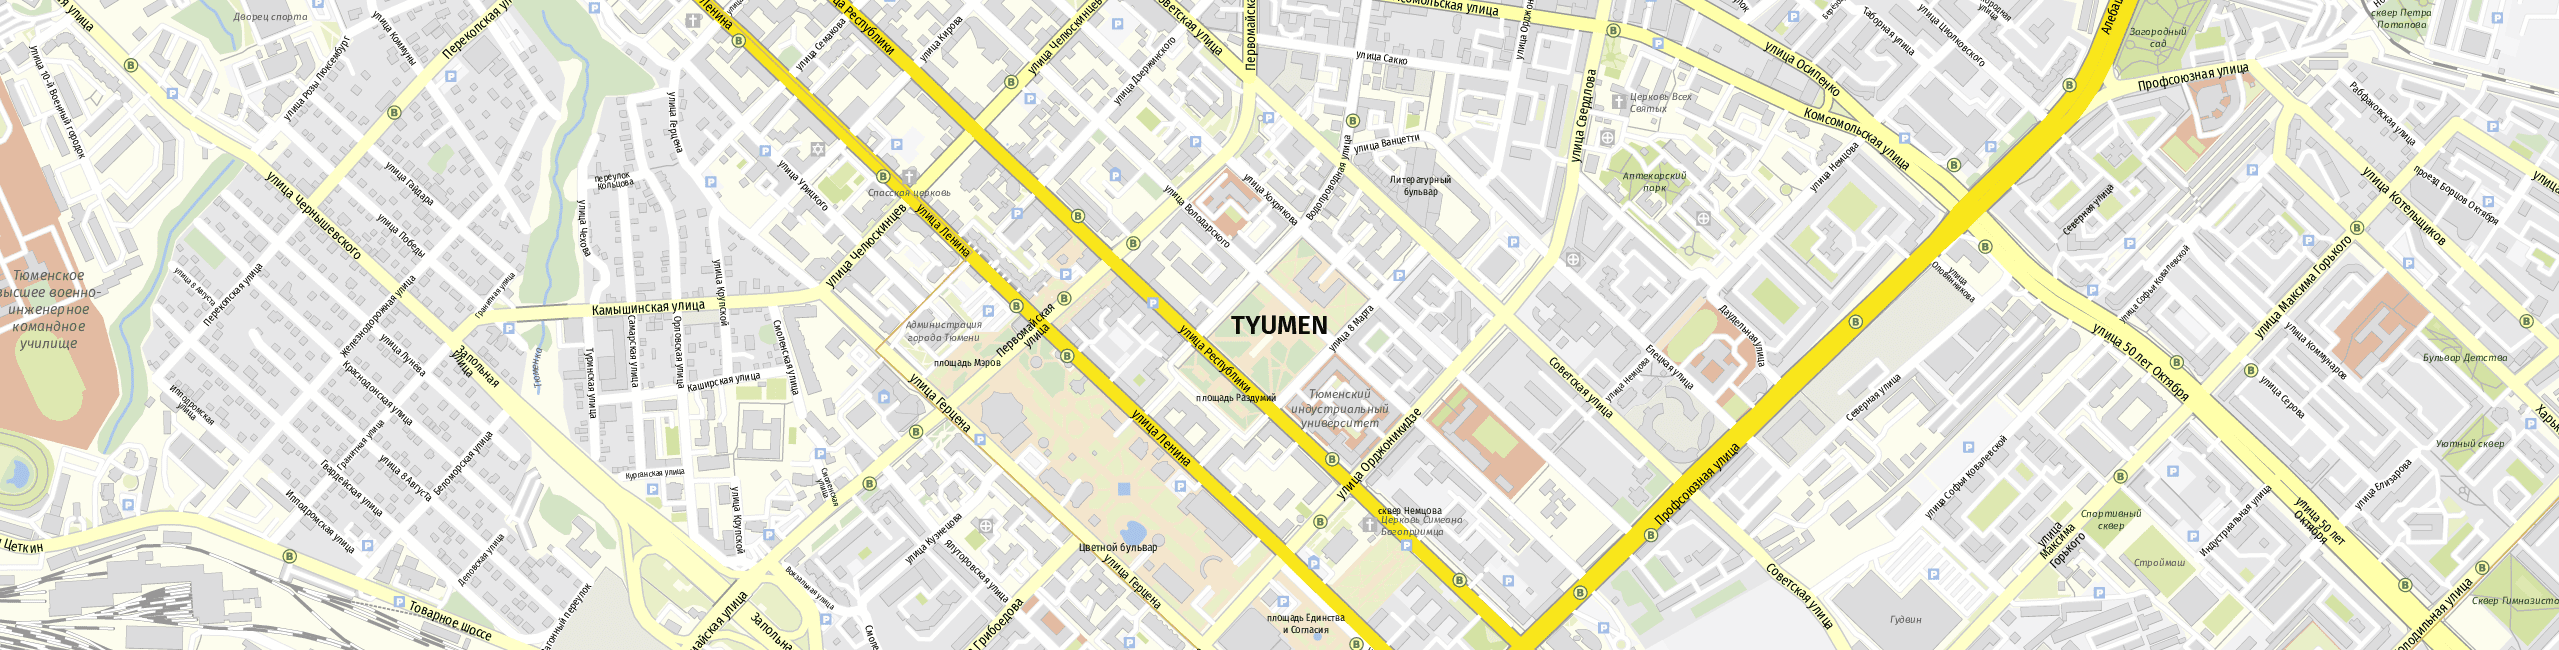 Stadtplan Tjumen zum Downloaden.